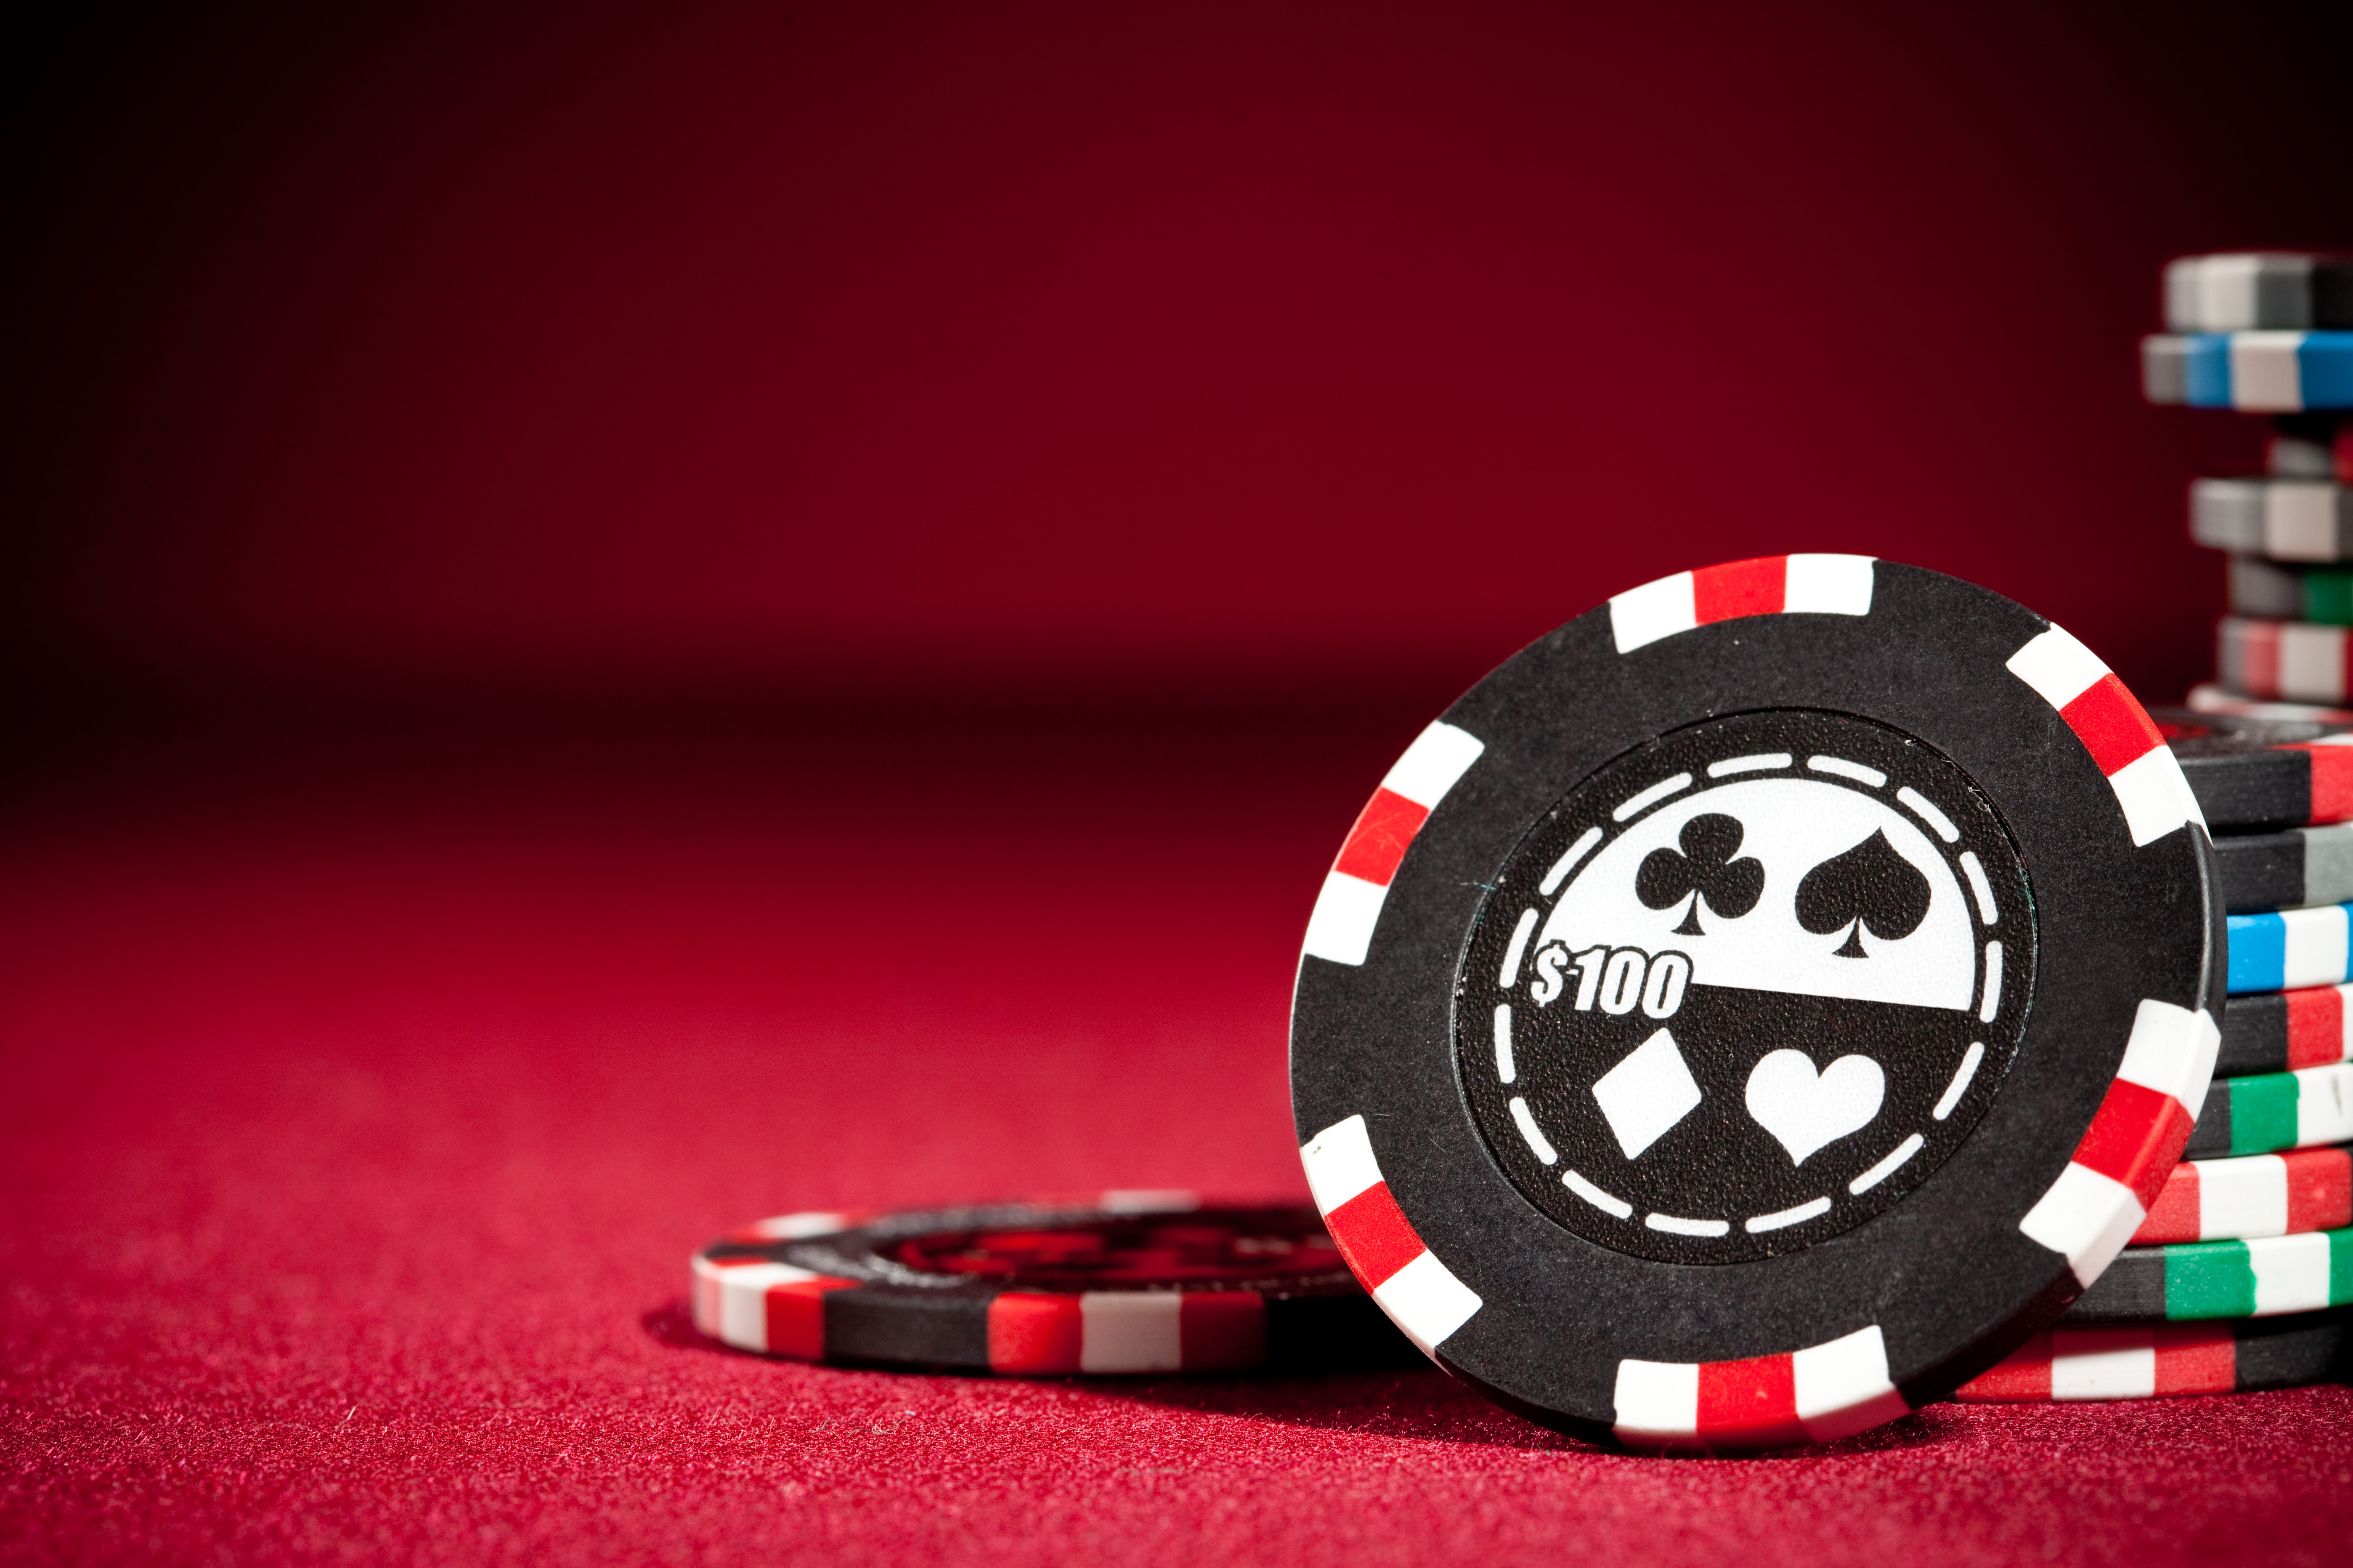 Играть в казино онлайн с минимальными ставками